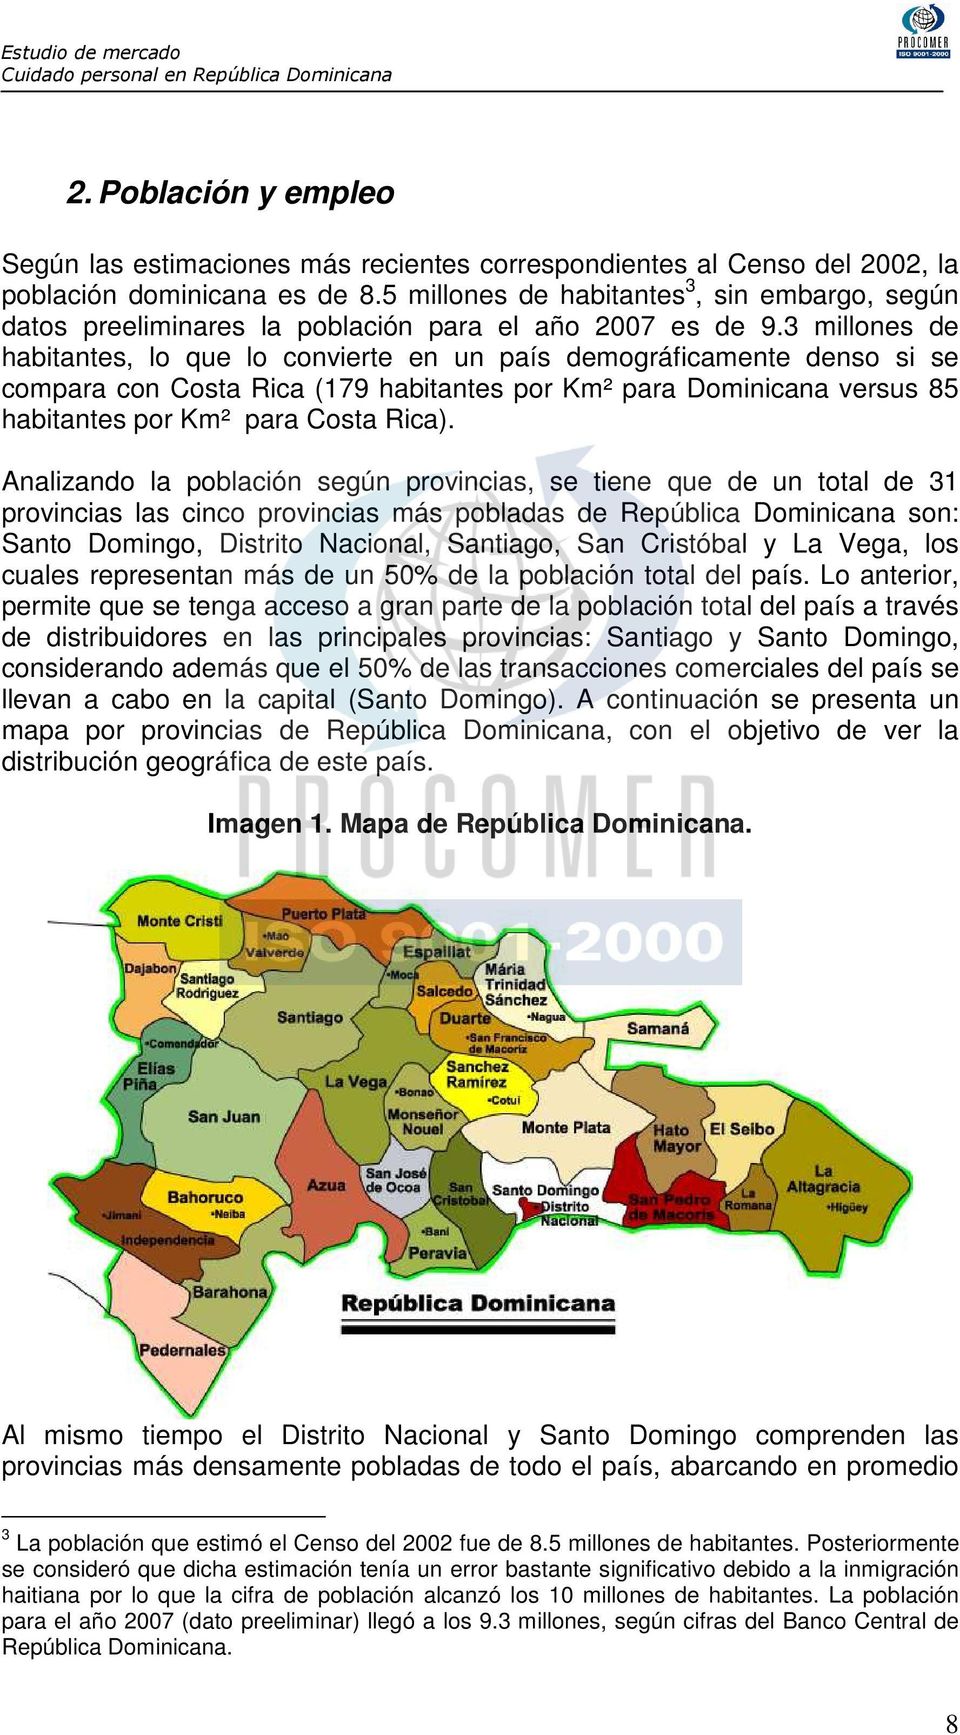 3 millones de habitantes, lo que lo convierte en un país demográficamente denso si se compara con Costa Rica (179 habitantes por Km² para Dominicana versus 85 habitantes por Km² para Costa Rica).